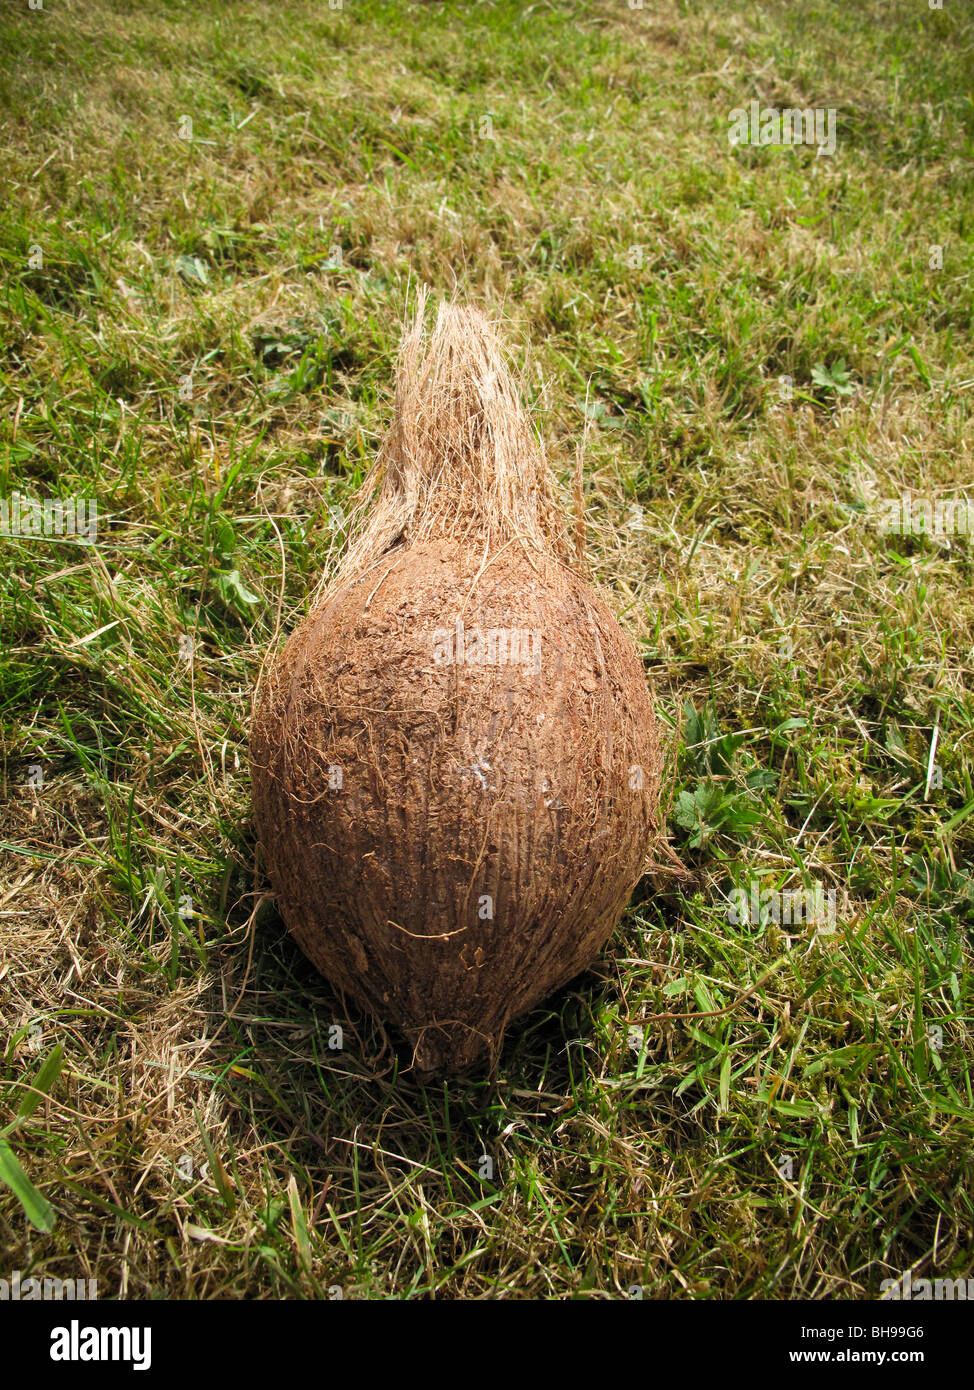 Noix de coco sur l'herbe Banque D'Images